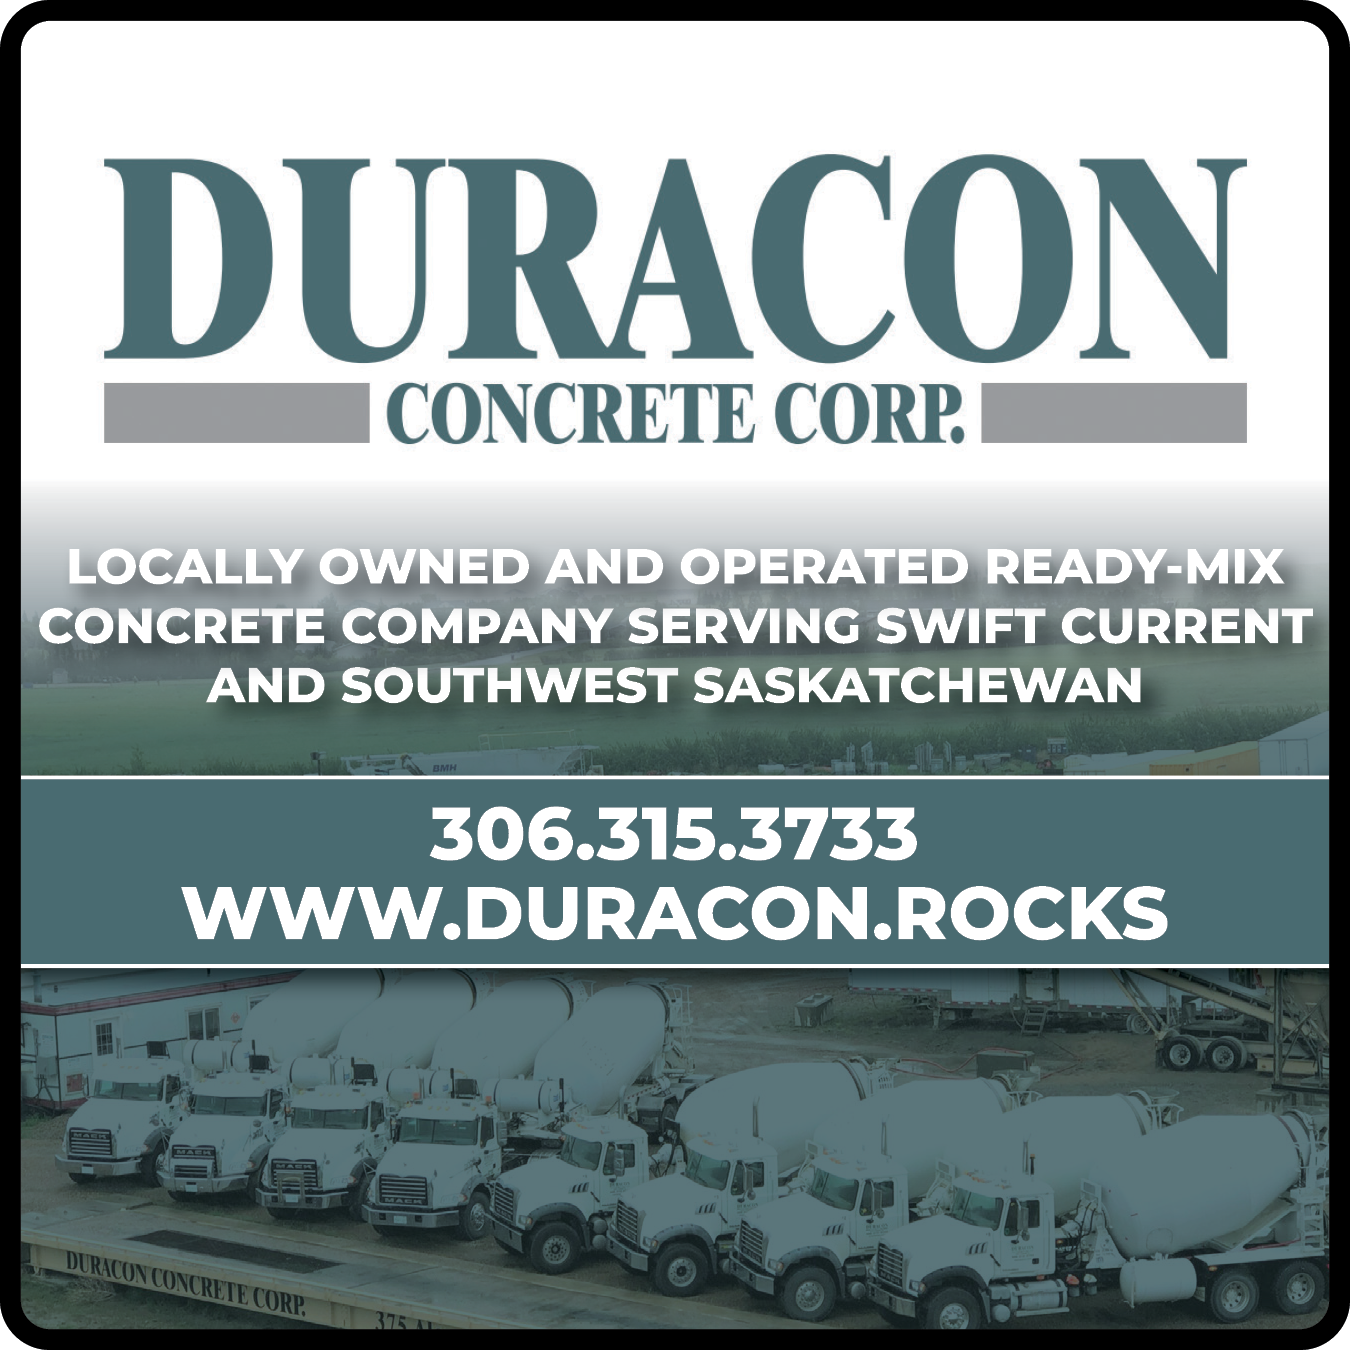 Duracon Concrete Corp